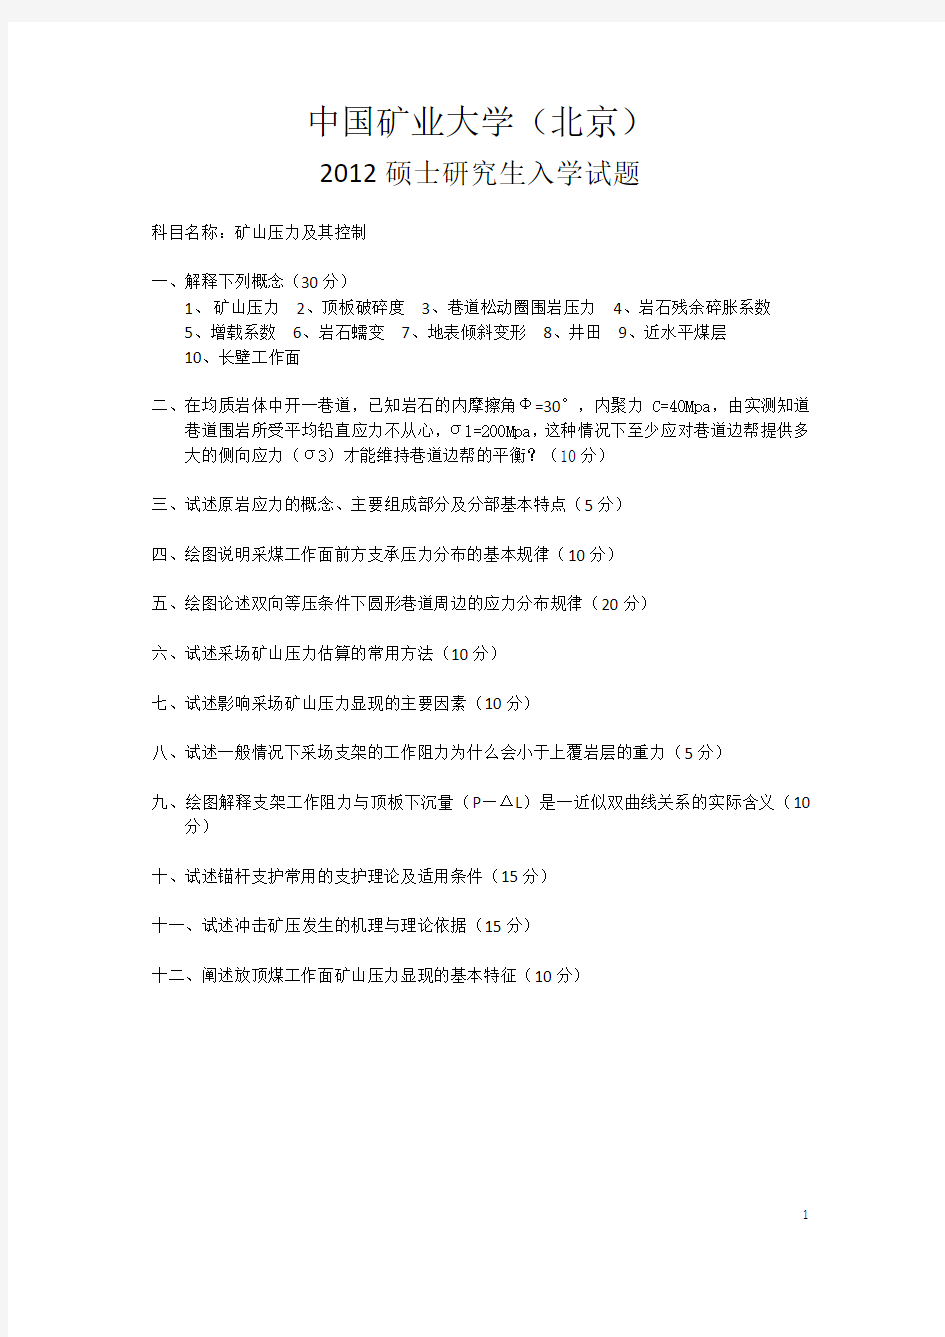 中国矿业大学(北京)矿山压力及岩层控制真题2006——2012